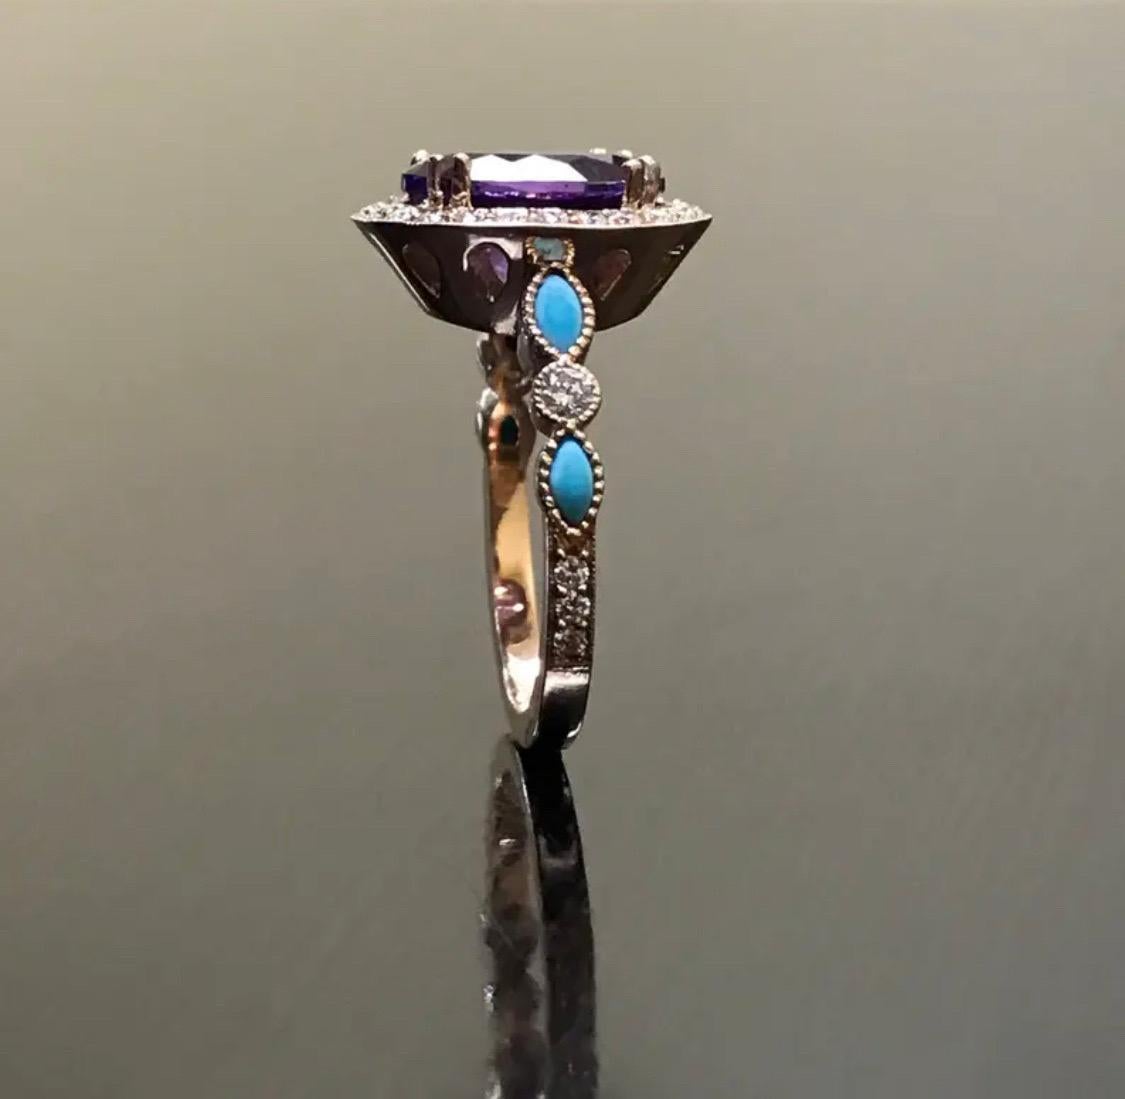 DeKara Designs Collection'S

Metall- 18K Rose Gold, .750.

Stones- Center verfügt über eine ovale Amethyst 11 x 9 MM, vier Marquise Türkis, zwei runde Opale, 30 runde Diamanten F-G Farbe VS2 Klarheit, 0,40 Karat.

Größe - 4-12

Schöne handgefertigte